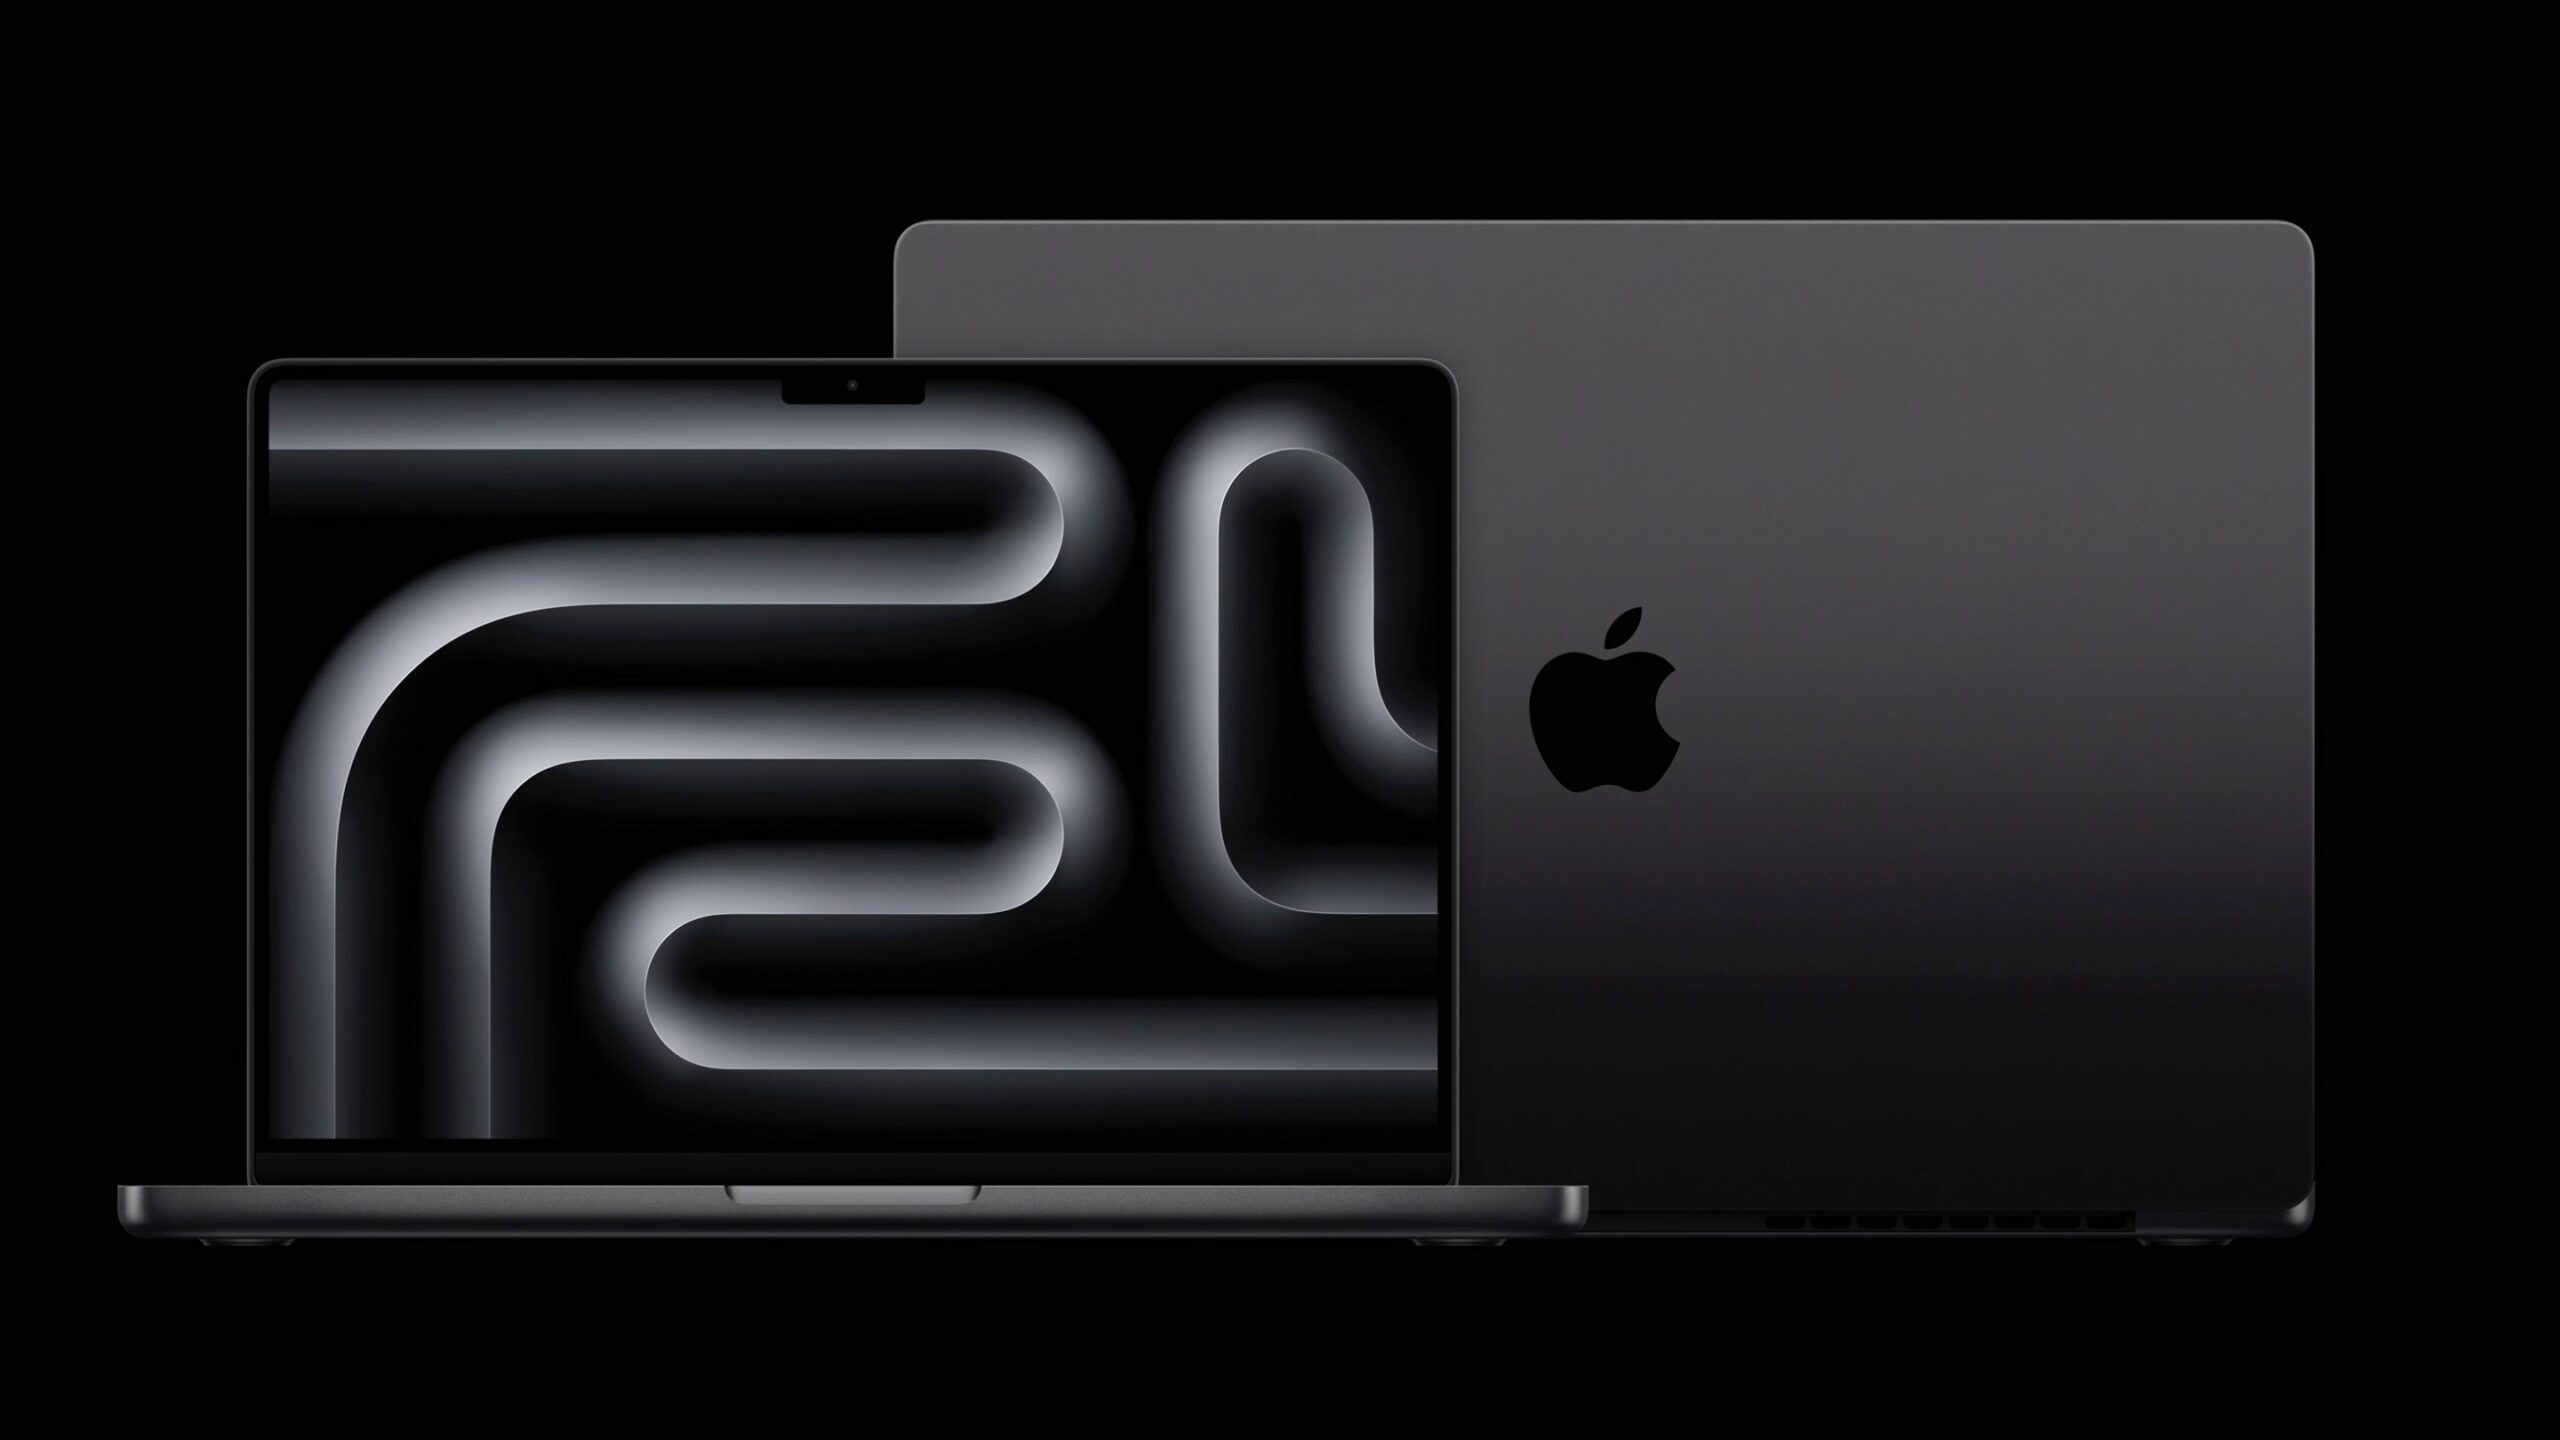 Apple 14" MacBook Pro von vorn, dahinter Rückseite des 16" MacBook Pro. Beide in Space Schwarz.